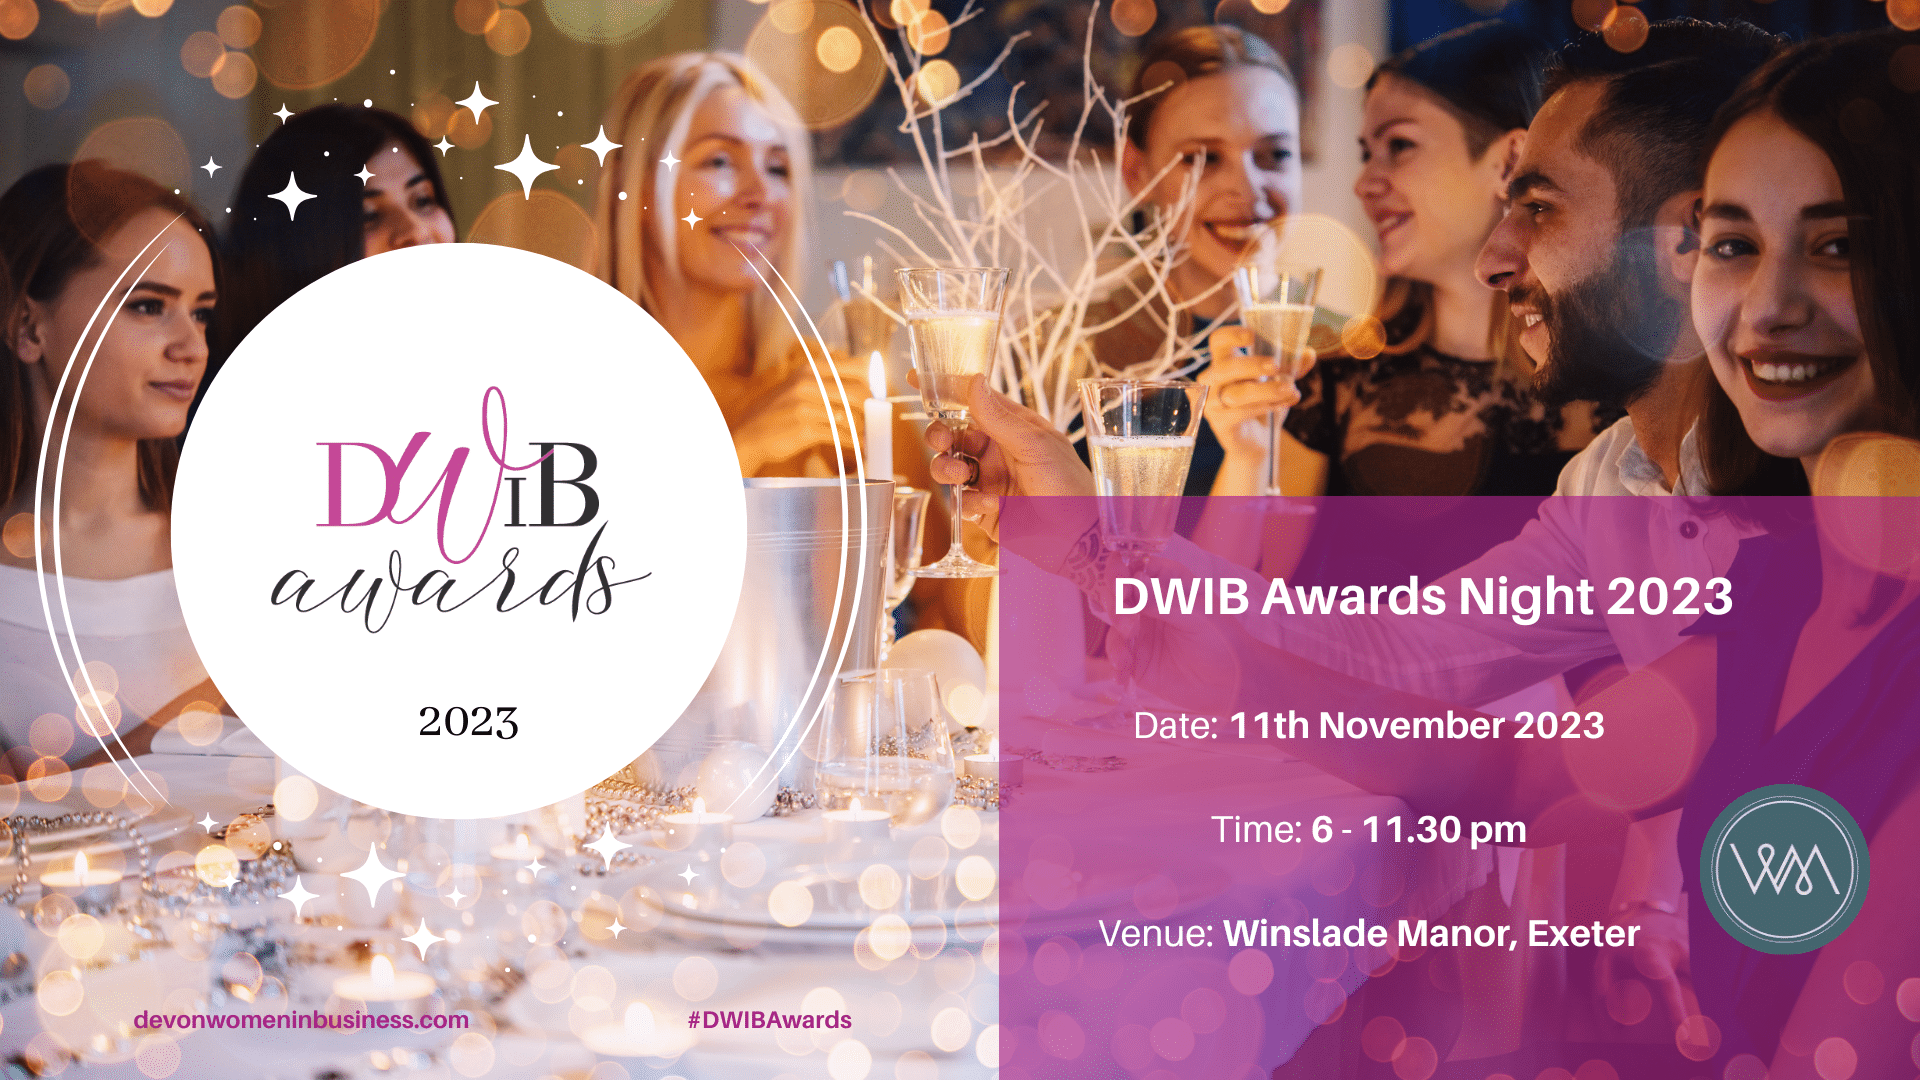 Image of glamorous people at a party table, celebrating and making toasts. Overlay: Logo: DWIB Awards 2023 devonwomeninbusiness.com #DWIBAwards